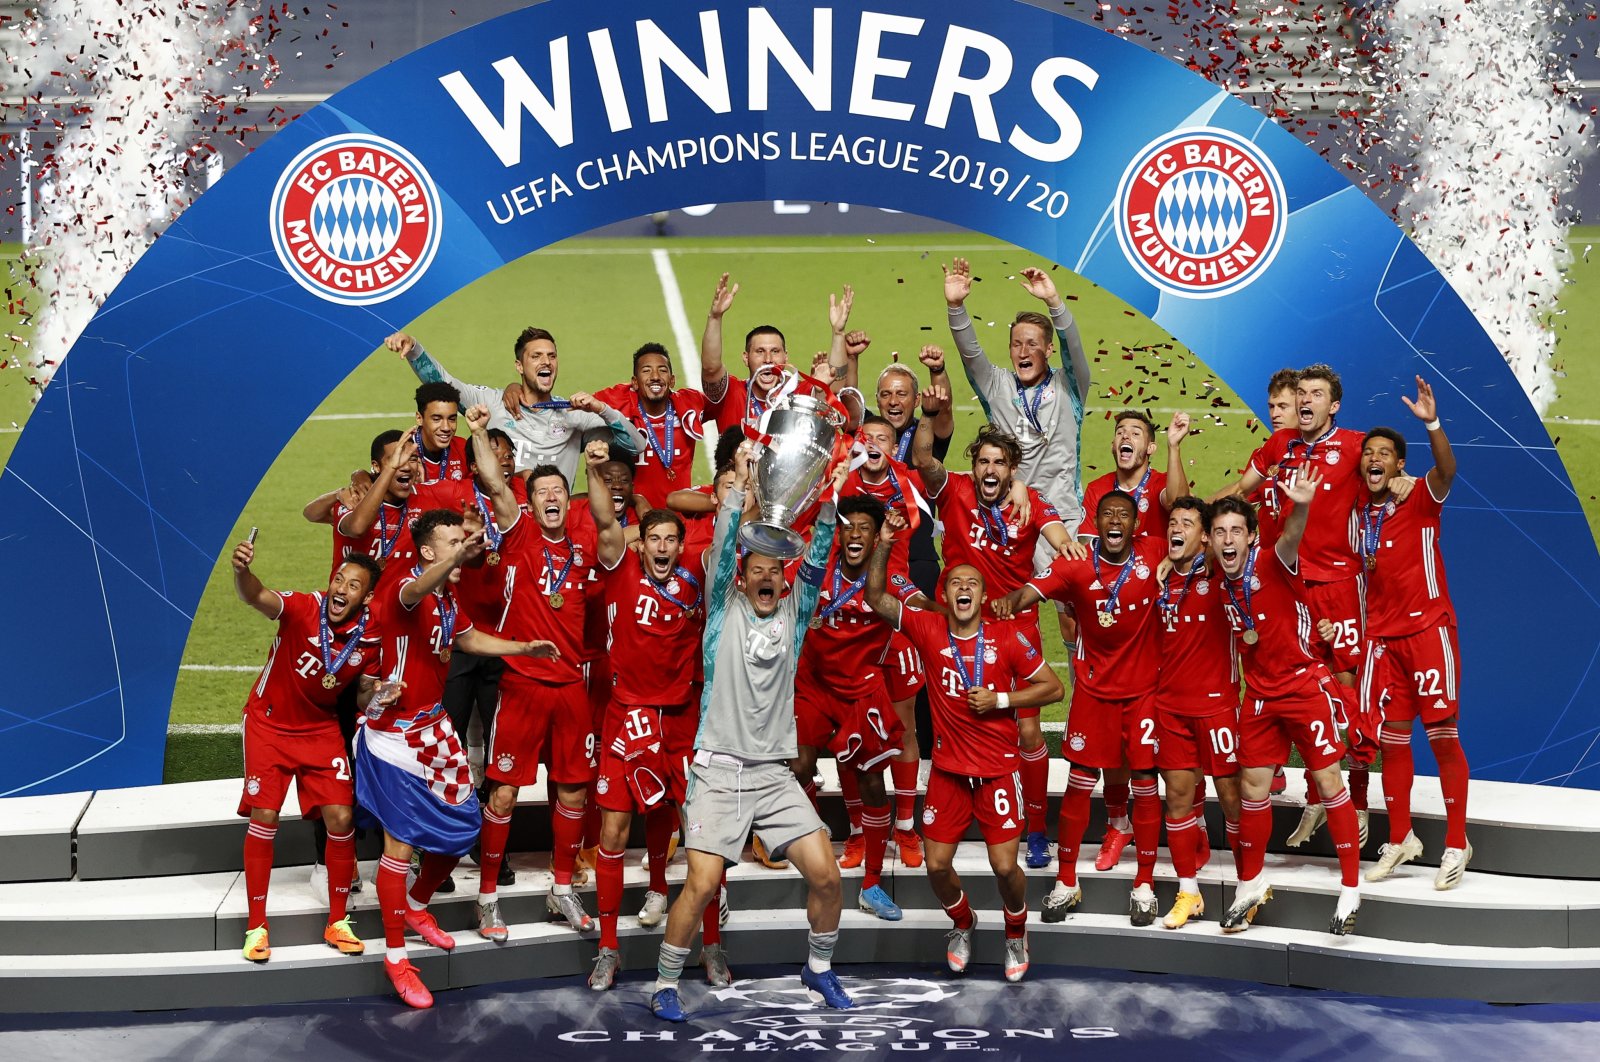 FC Bayern München – Wikipedia